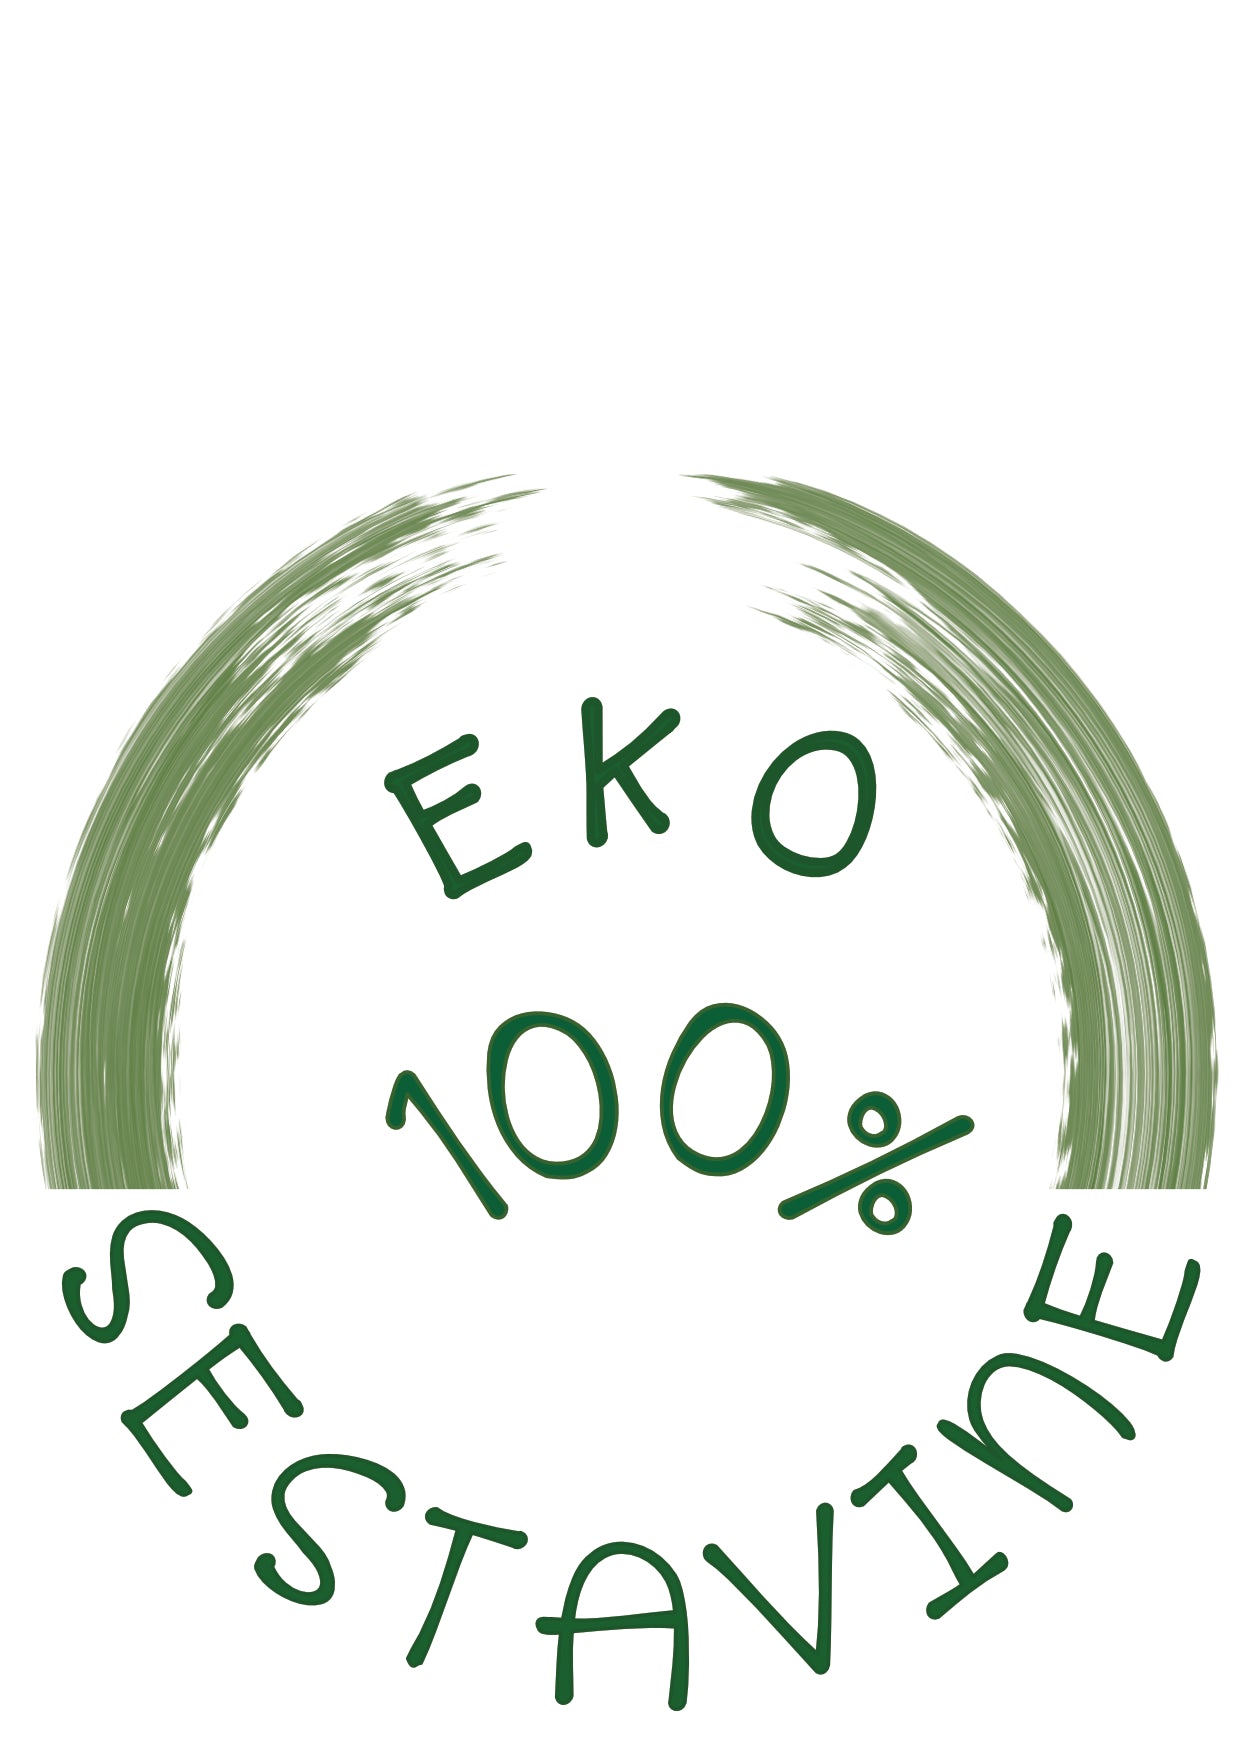 eko gemoderivati, esence dreves, bachove rešilne kapljice,  100% ekološke sestavine, ekološke kapljice